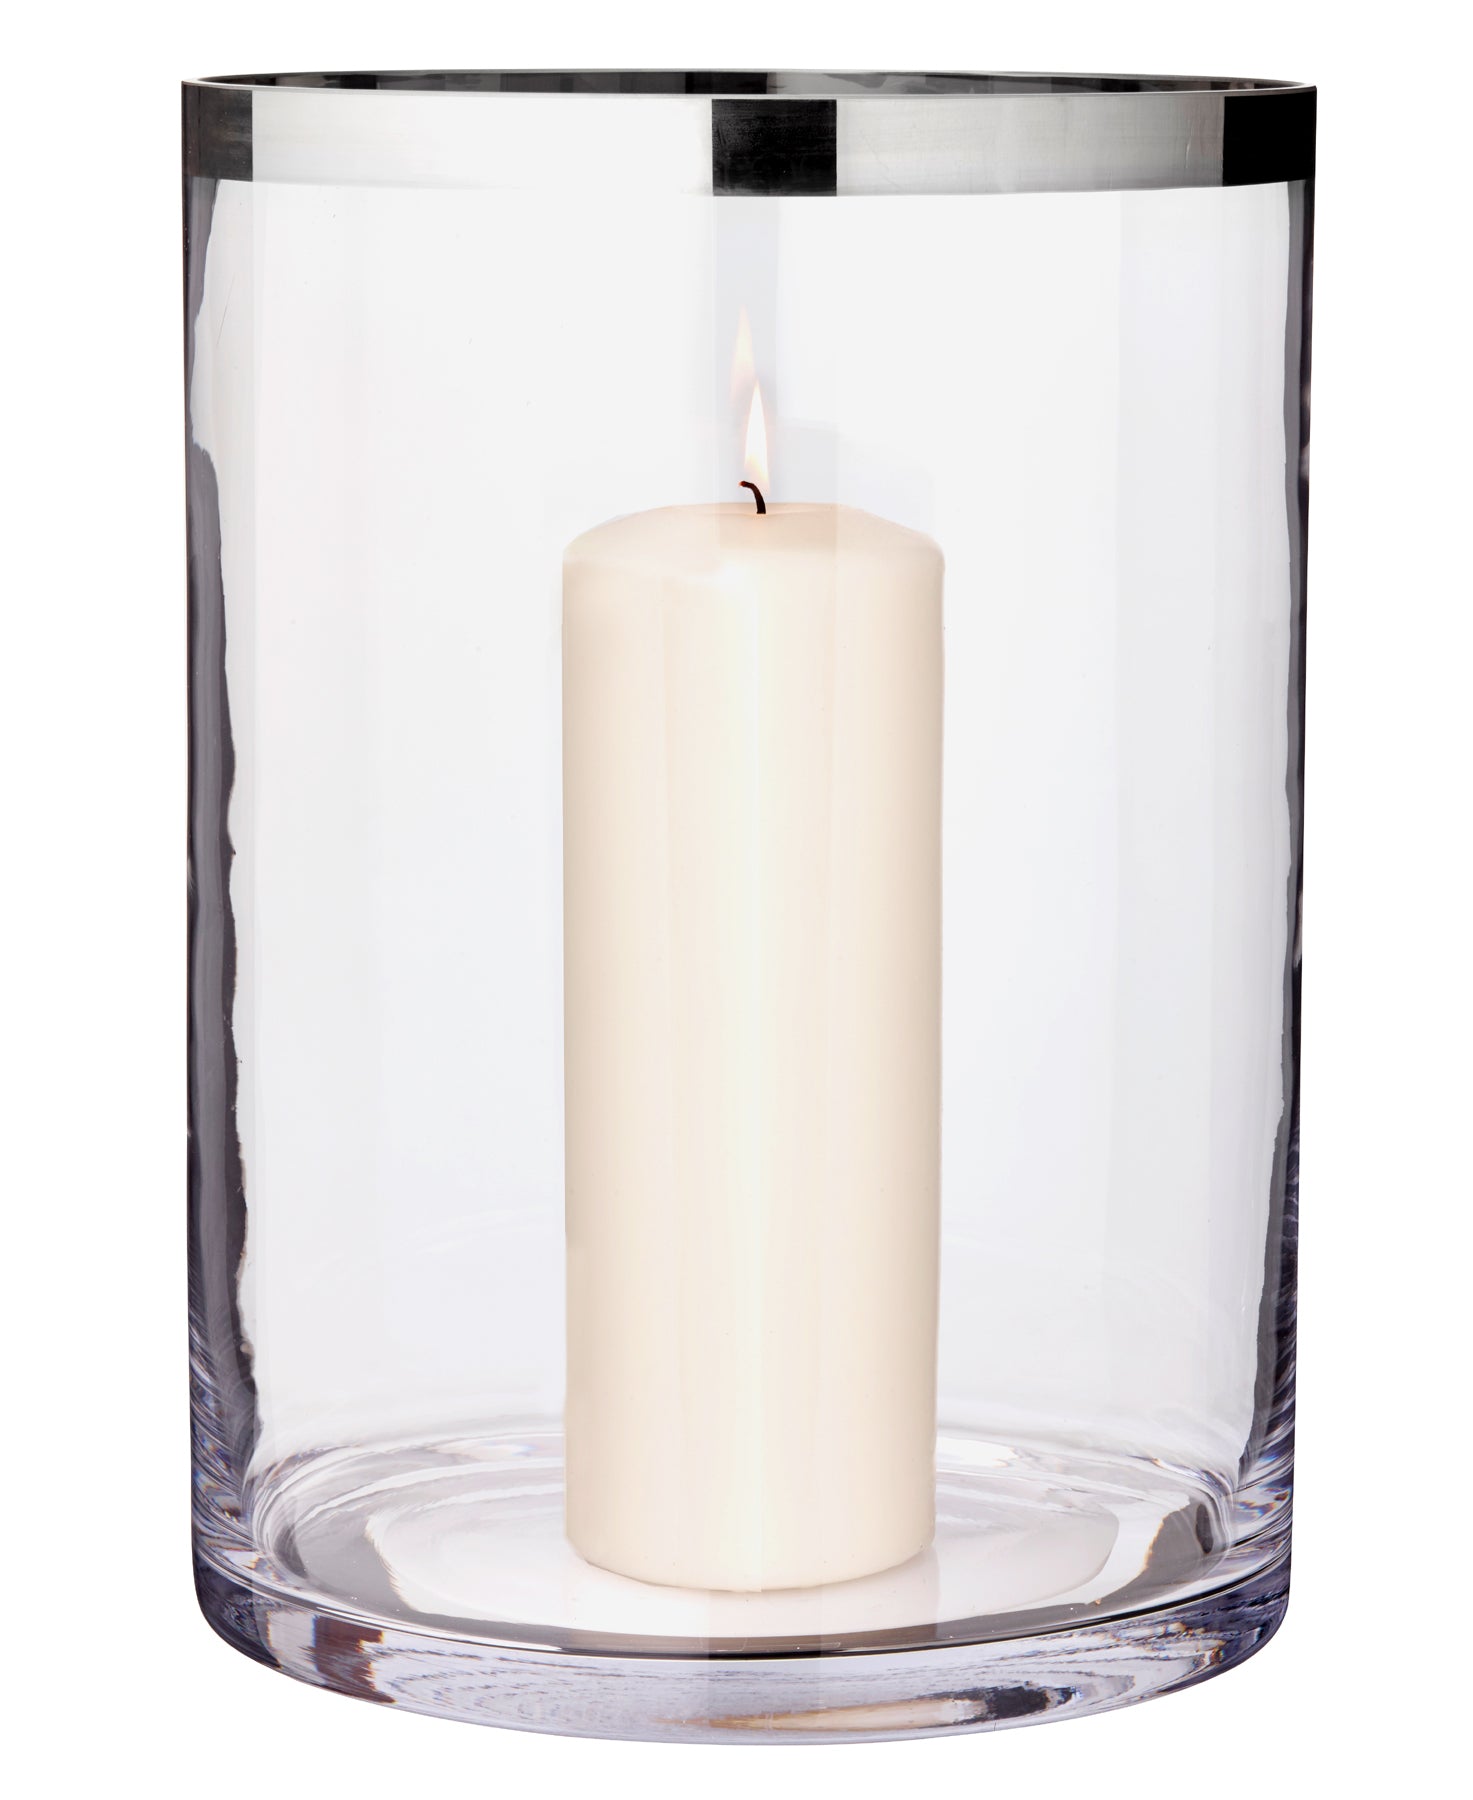 Windlicht / Vase Molly H 39 cm - Edzard